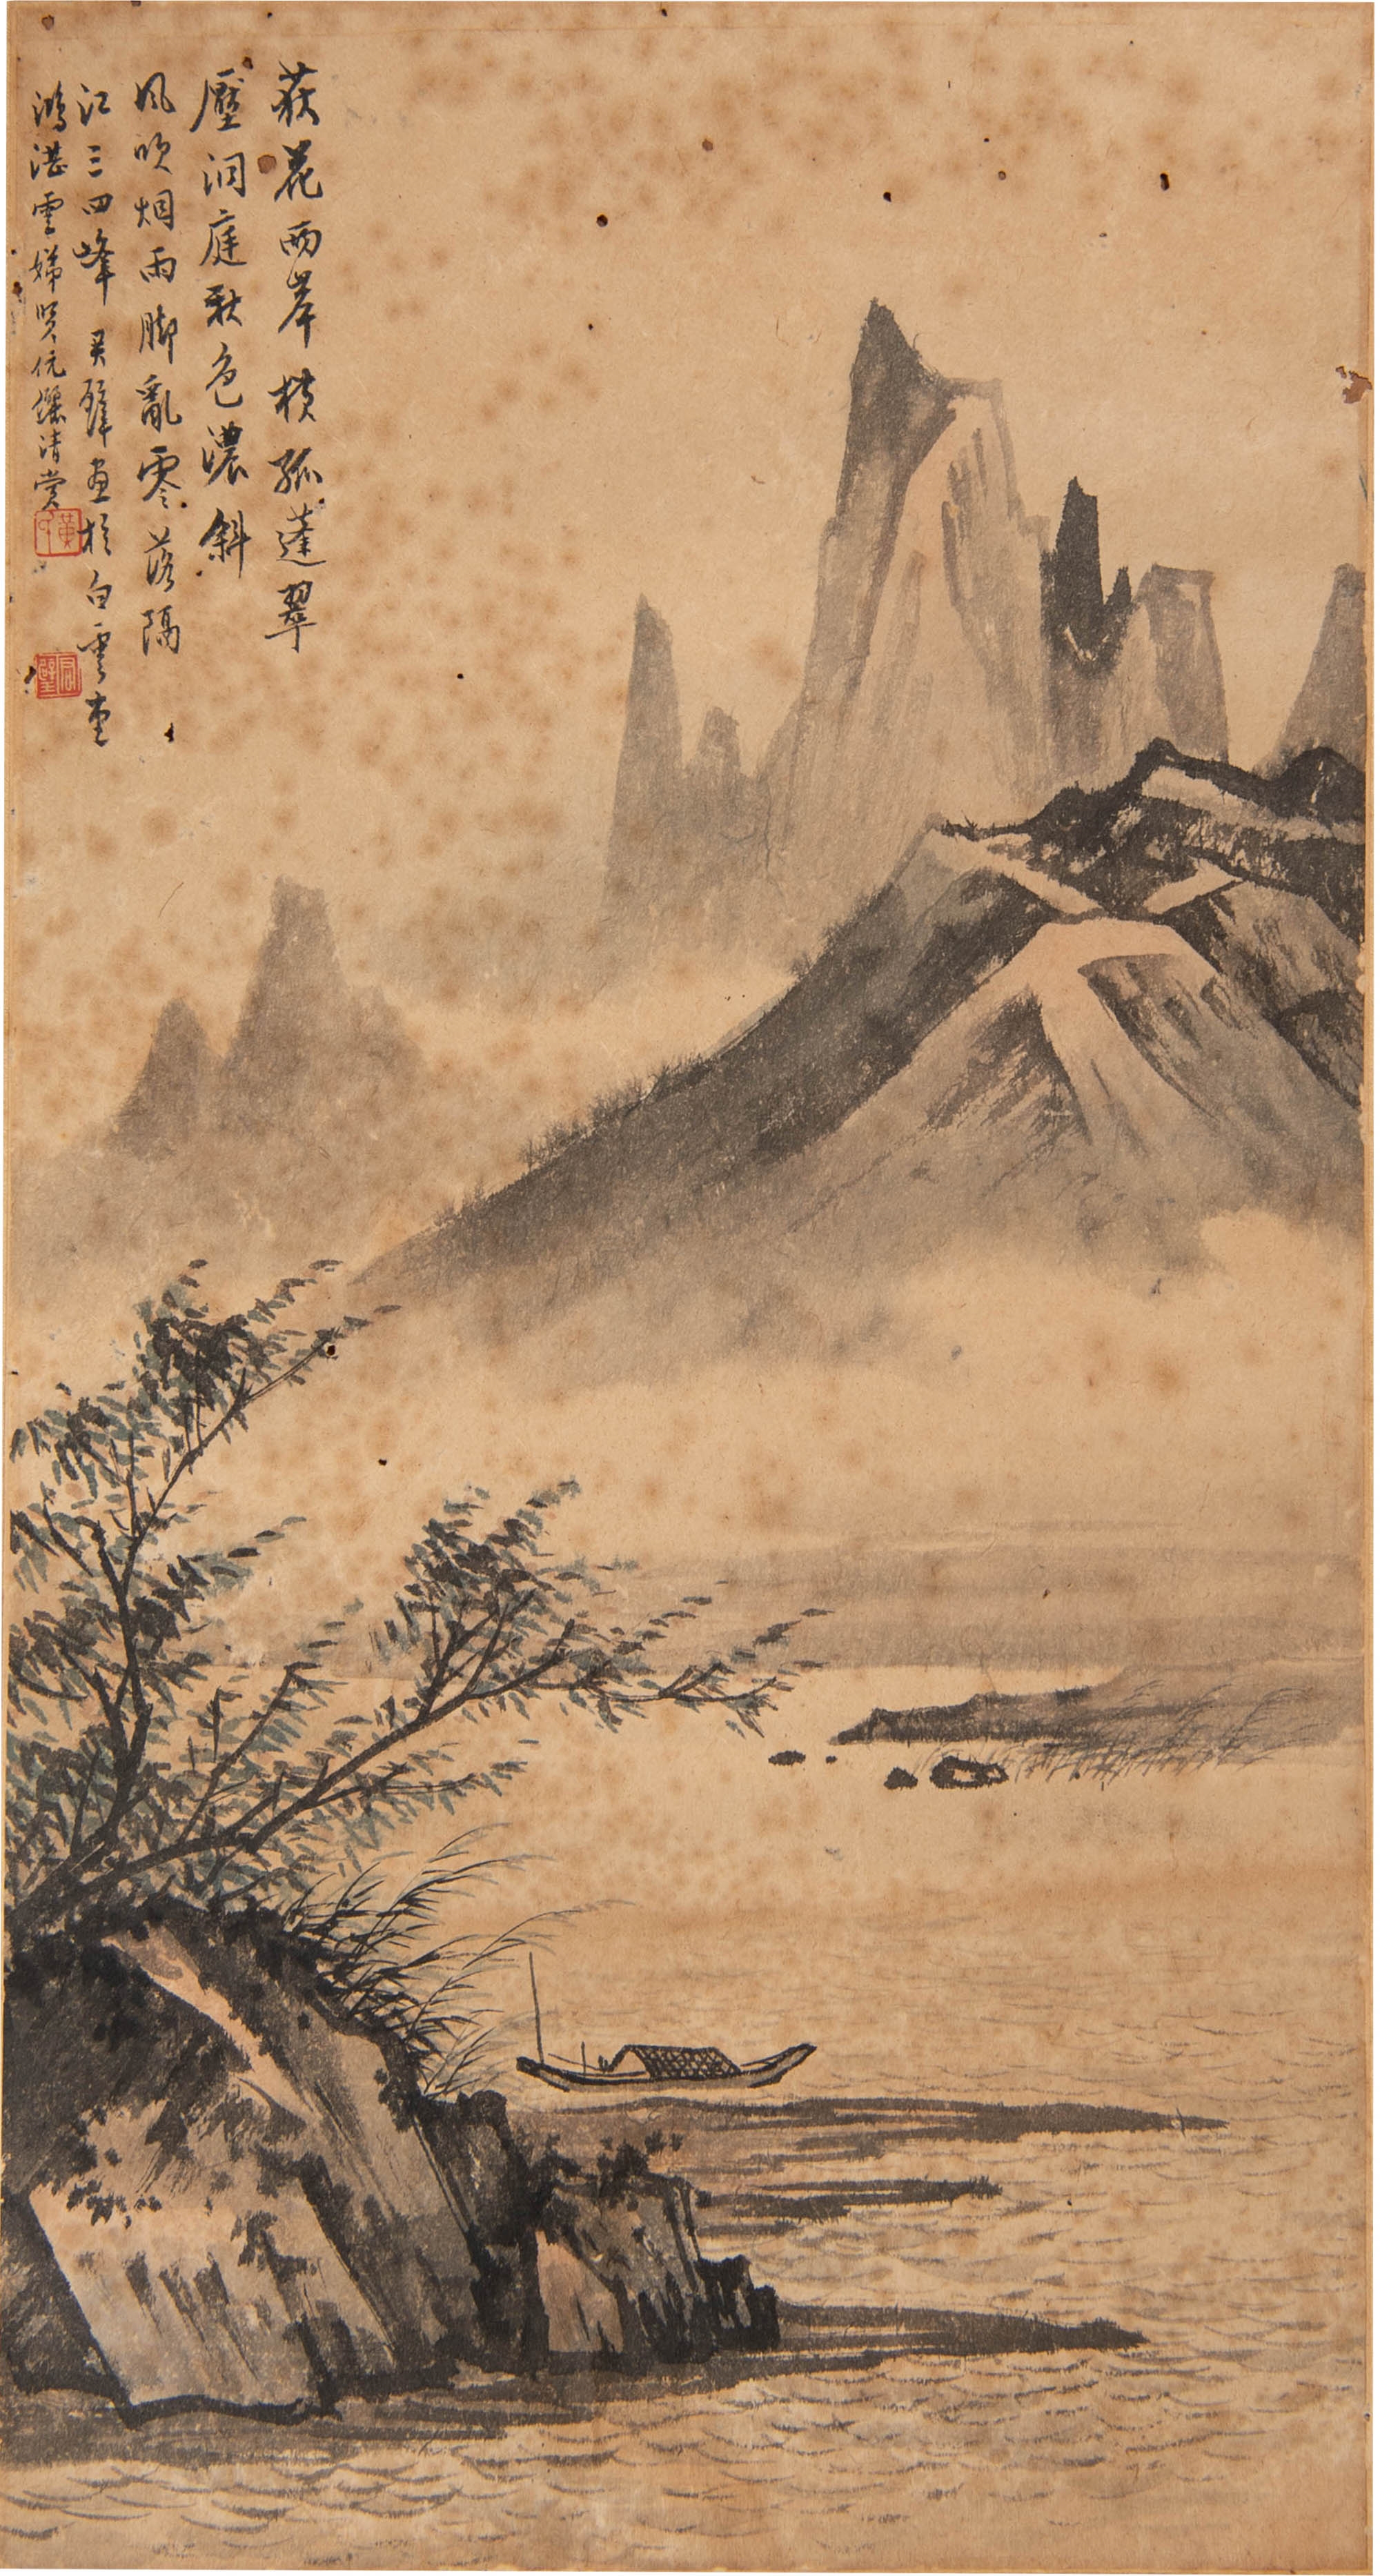 黃君璧 鴻湛上款山水鏡片 A Chinese landscape painting by Huang Junbi